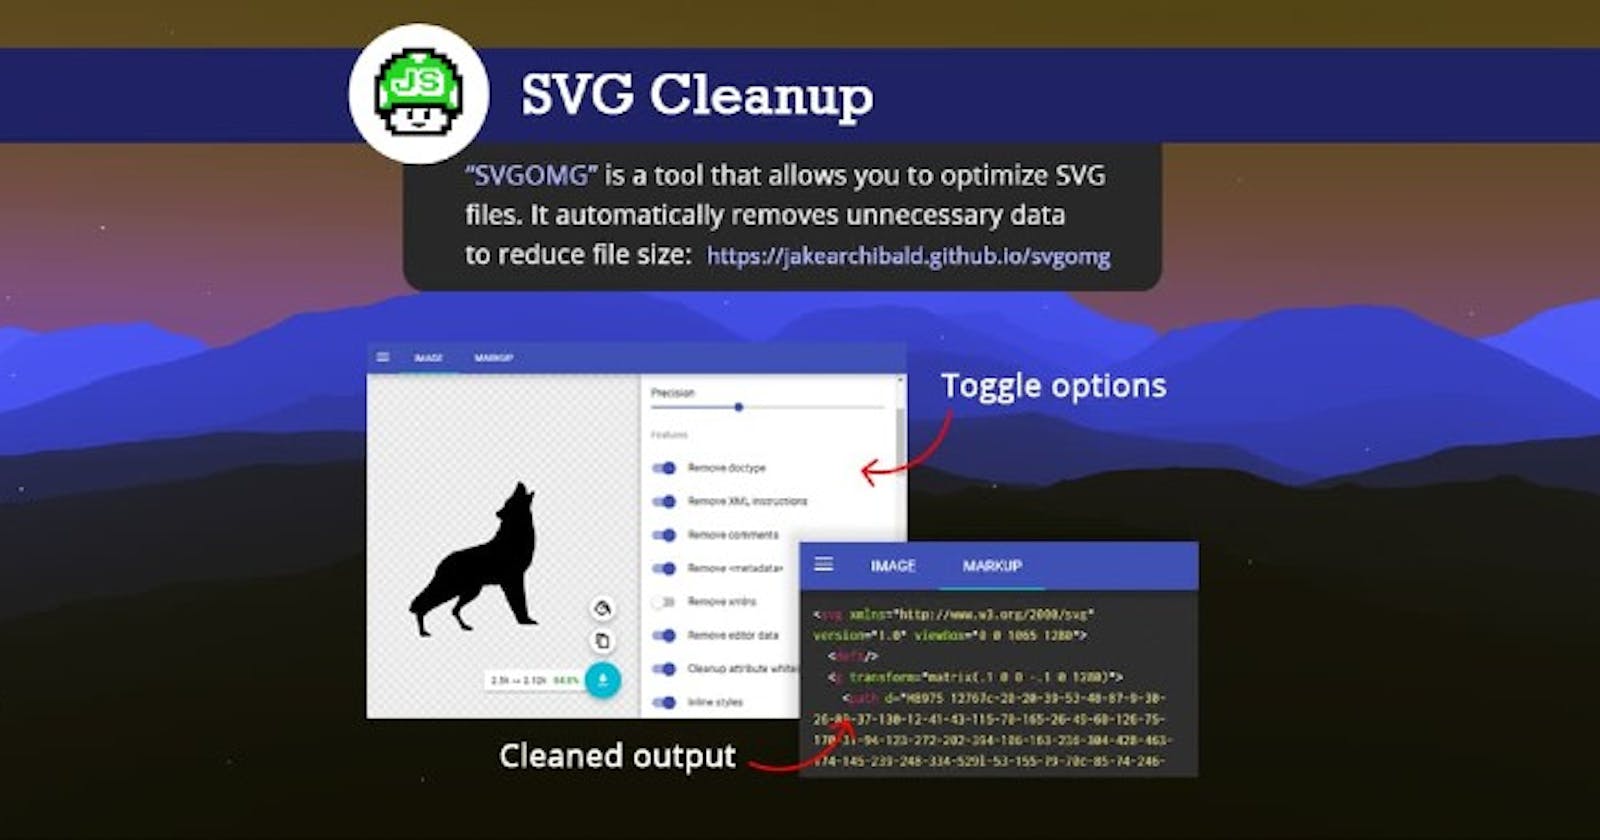 SVG Cleanup